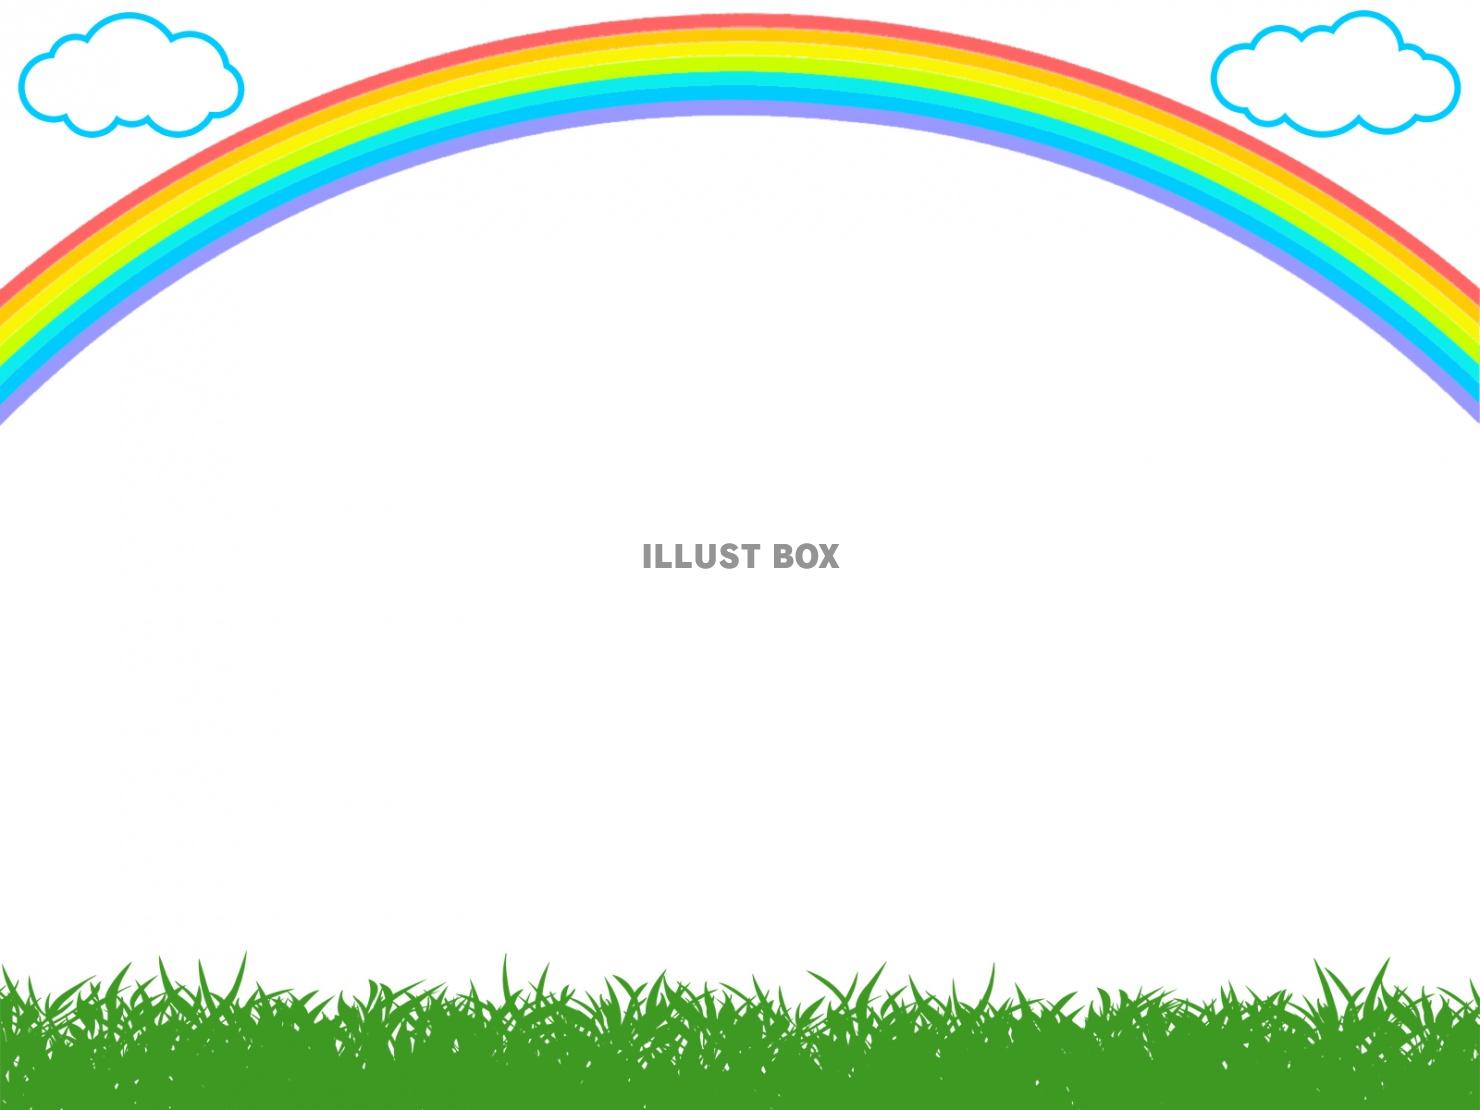 無料イラスト 虹と草原のフレームシンプル飾り枠背景額縁イラスト